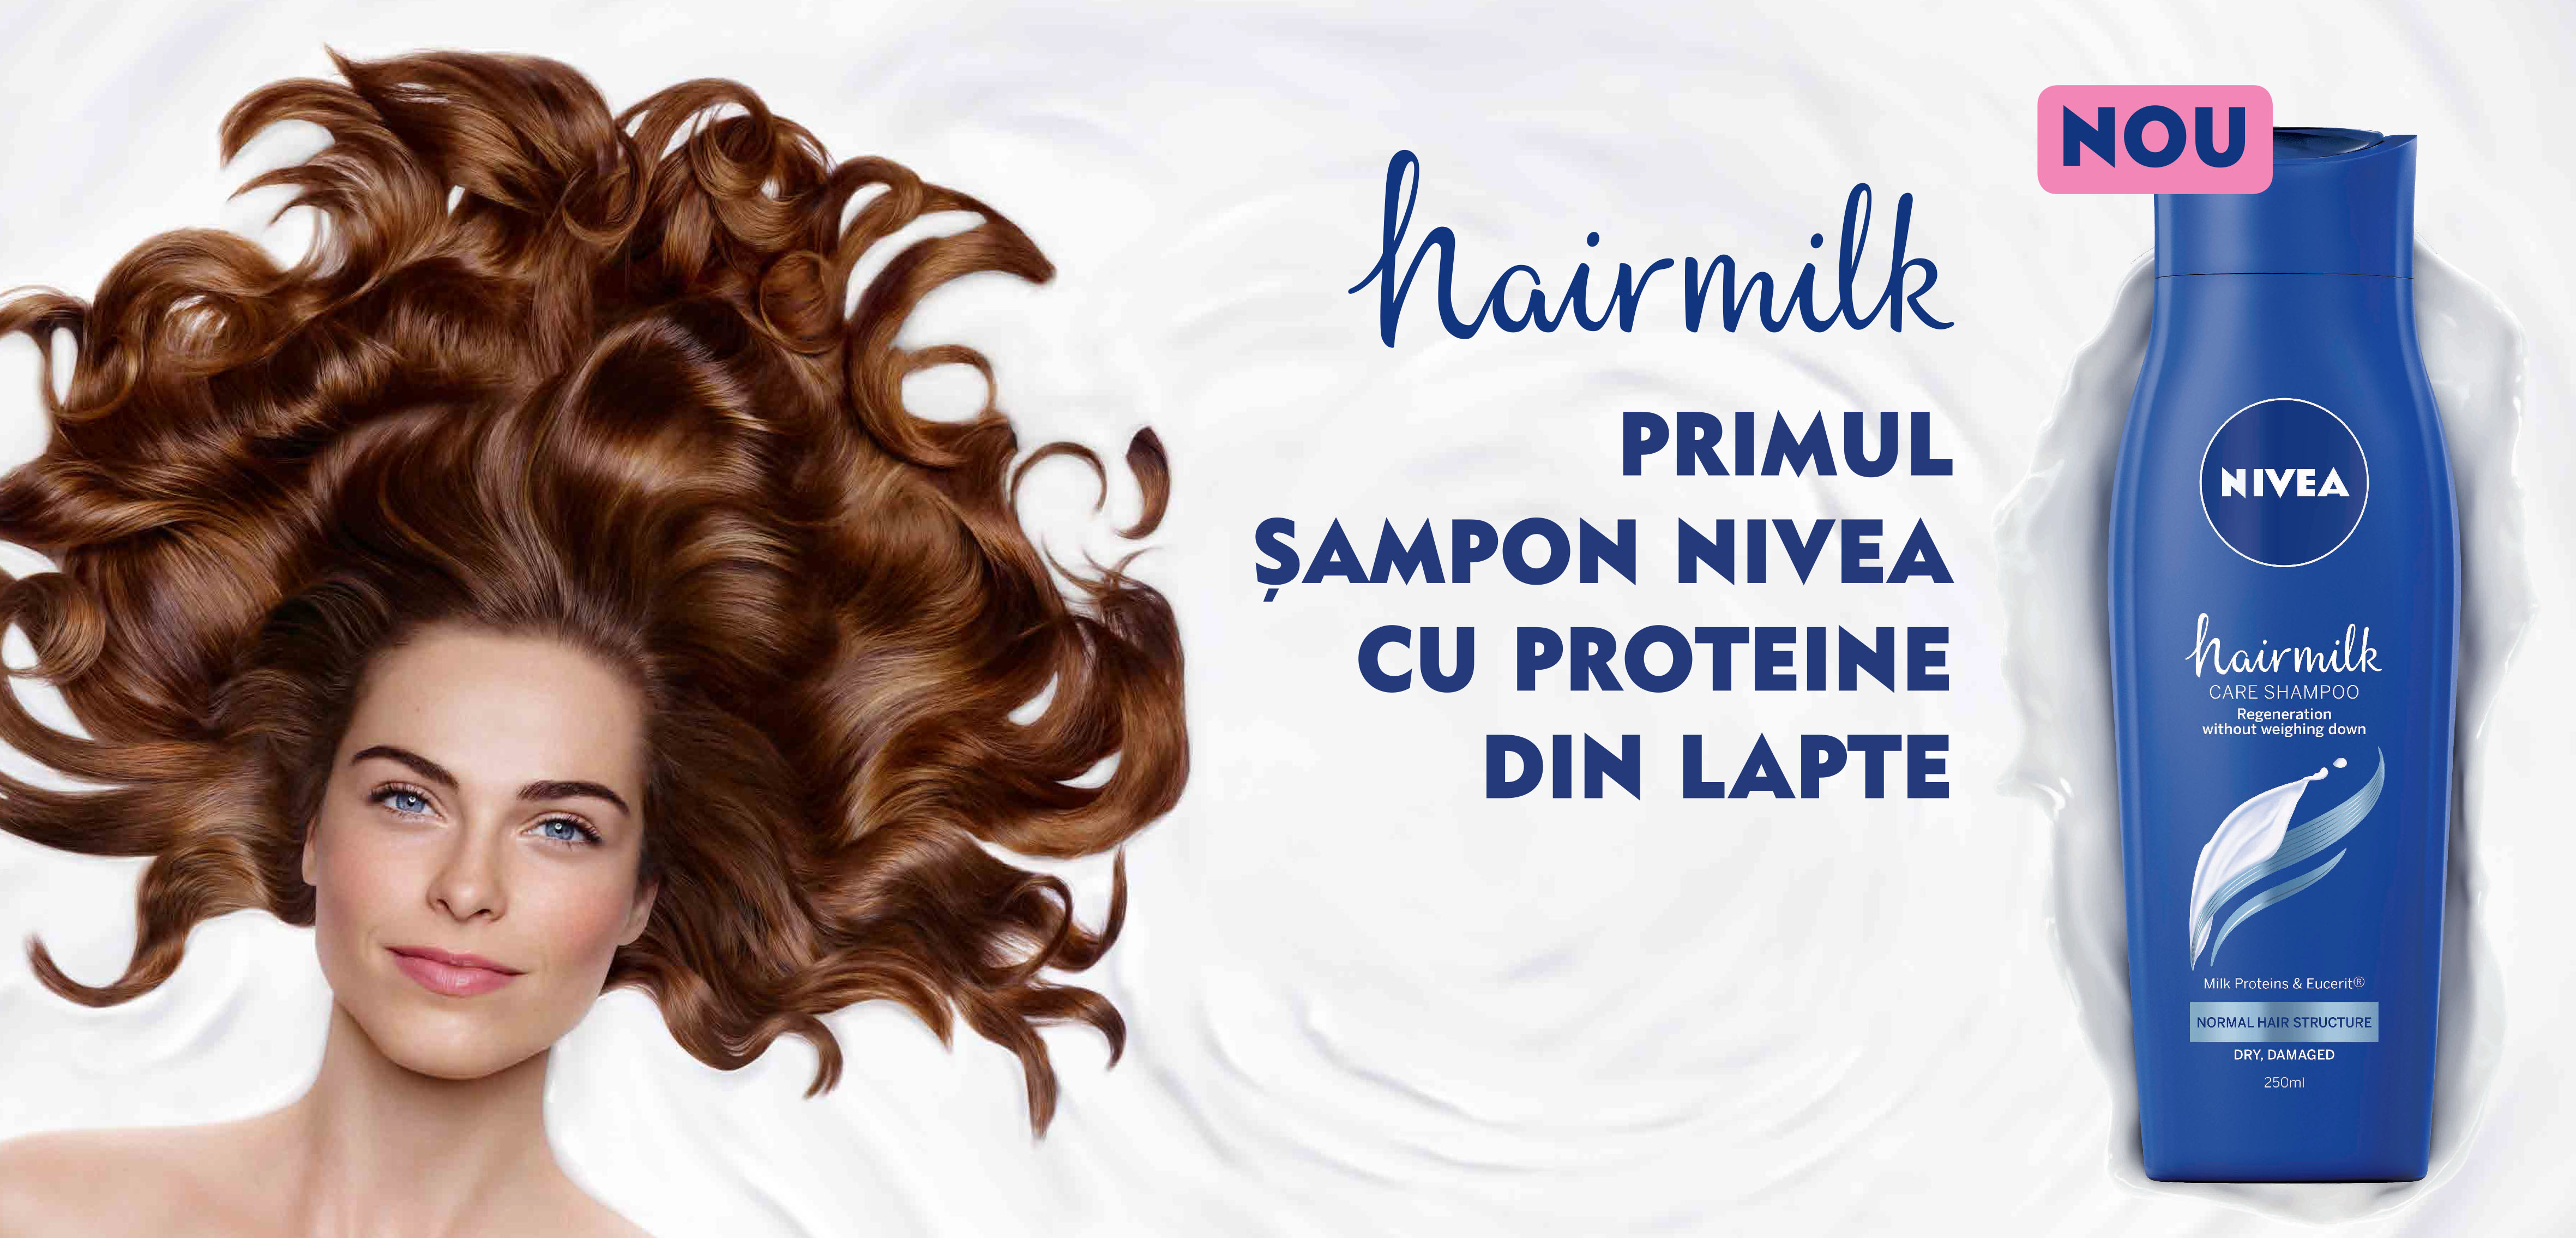 Ritualul de îngrijire al Cleopatrei a fost reinventat pentru părul tău!   Încearcă Hairmilk, primul șampon NIVEA cu proteine din lapte